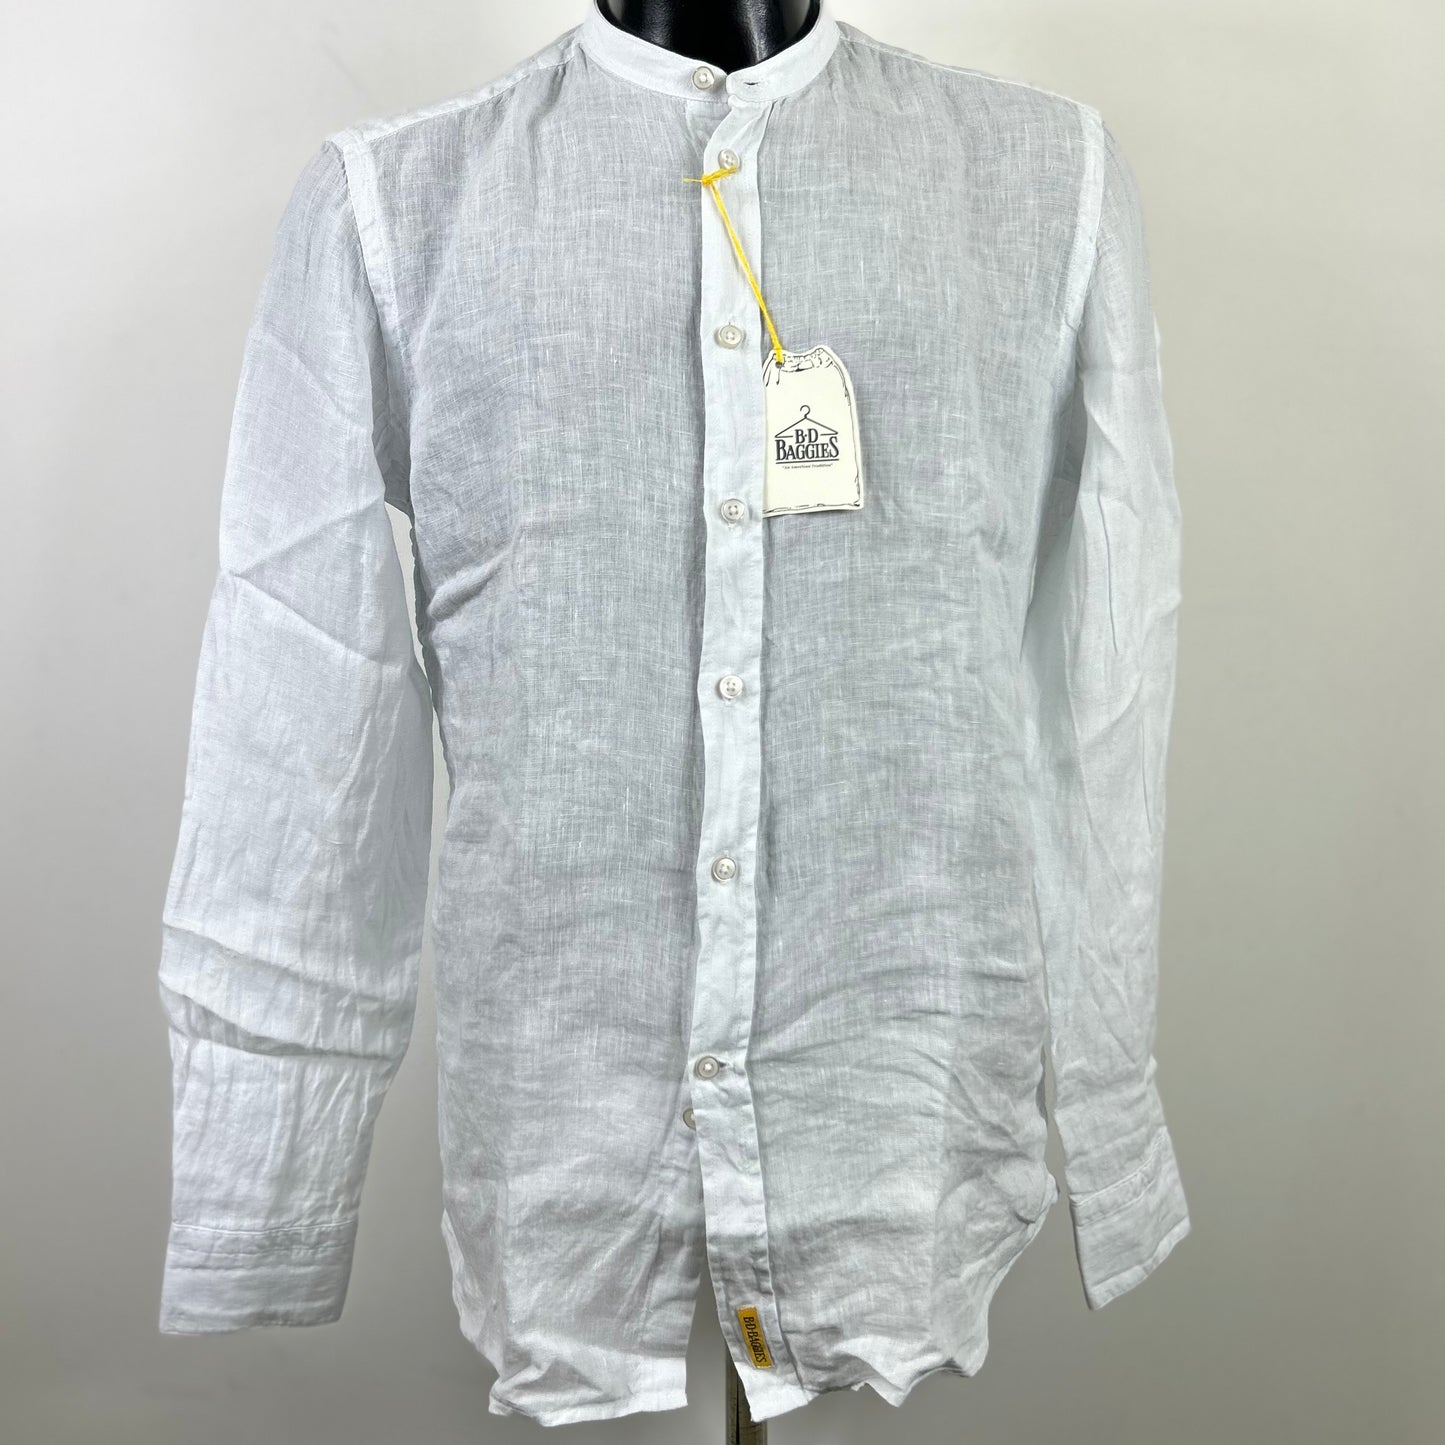 Camicia bianca slim fit in lino collo alla coreana modello Dexter by B.D. BAGGIES